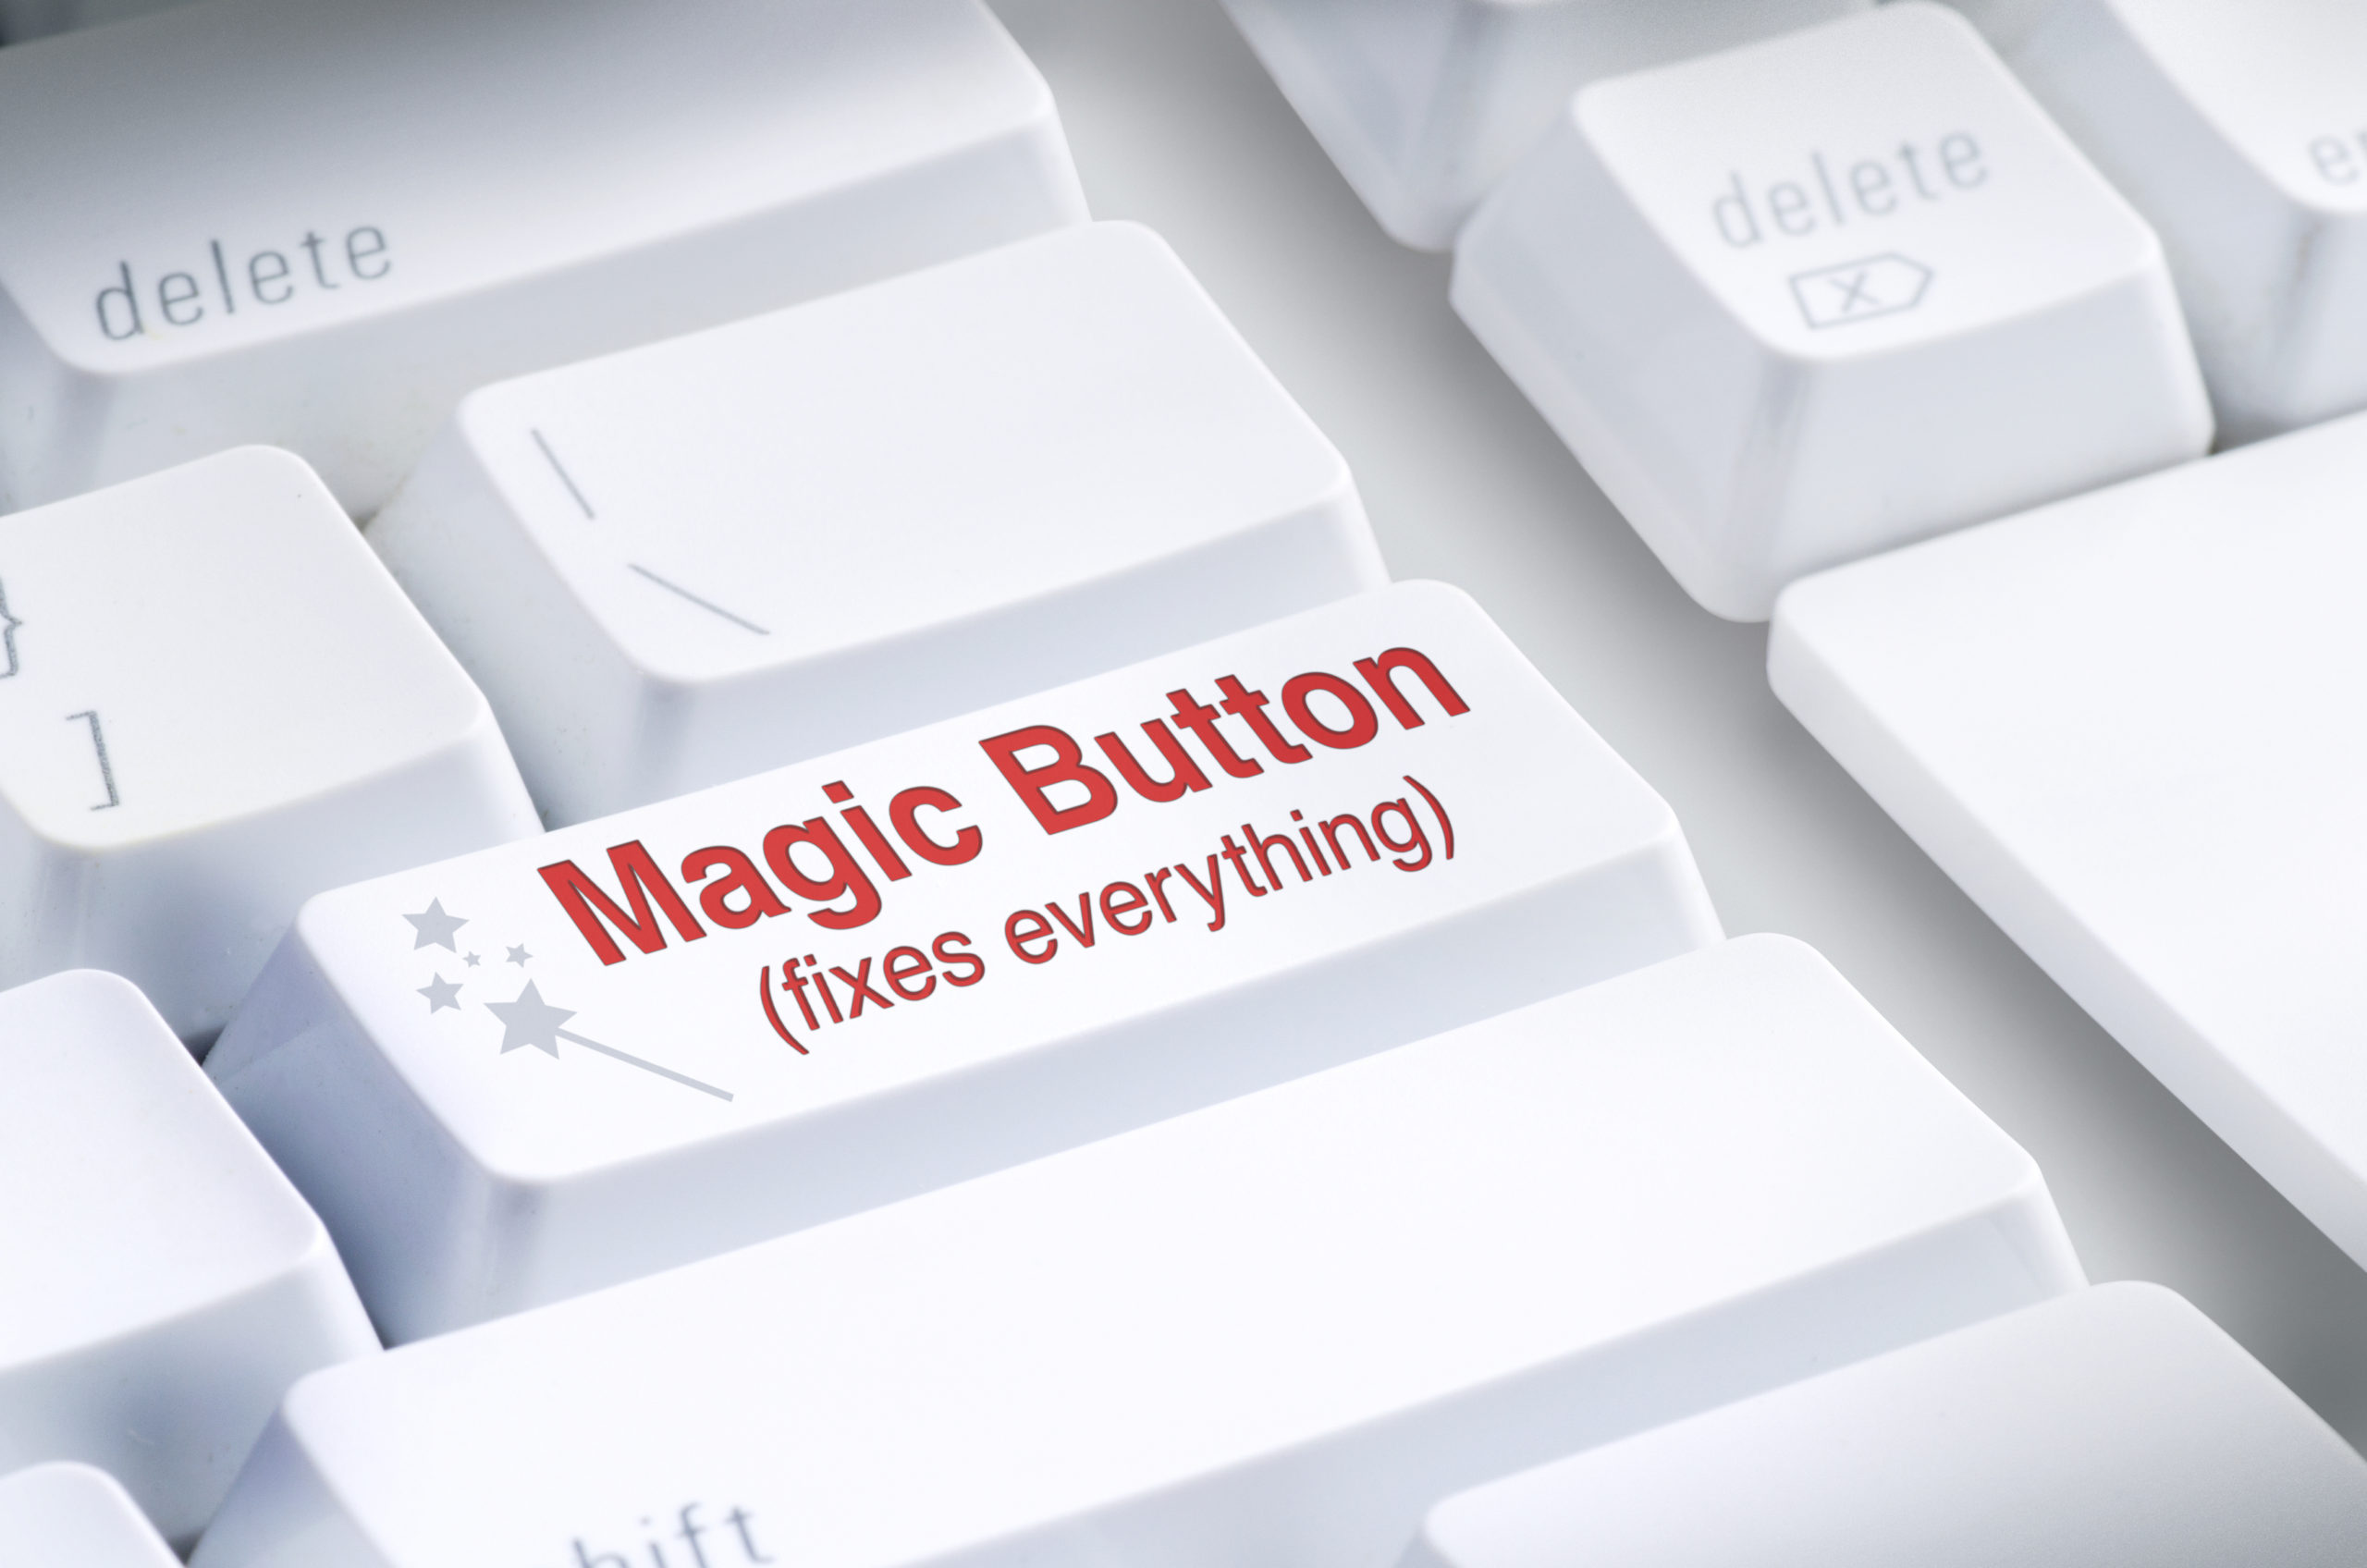 Magic Button